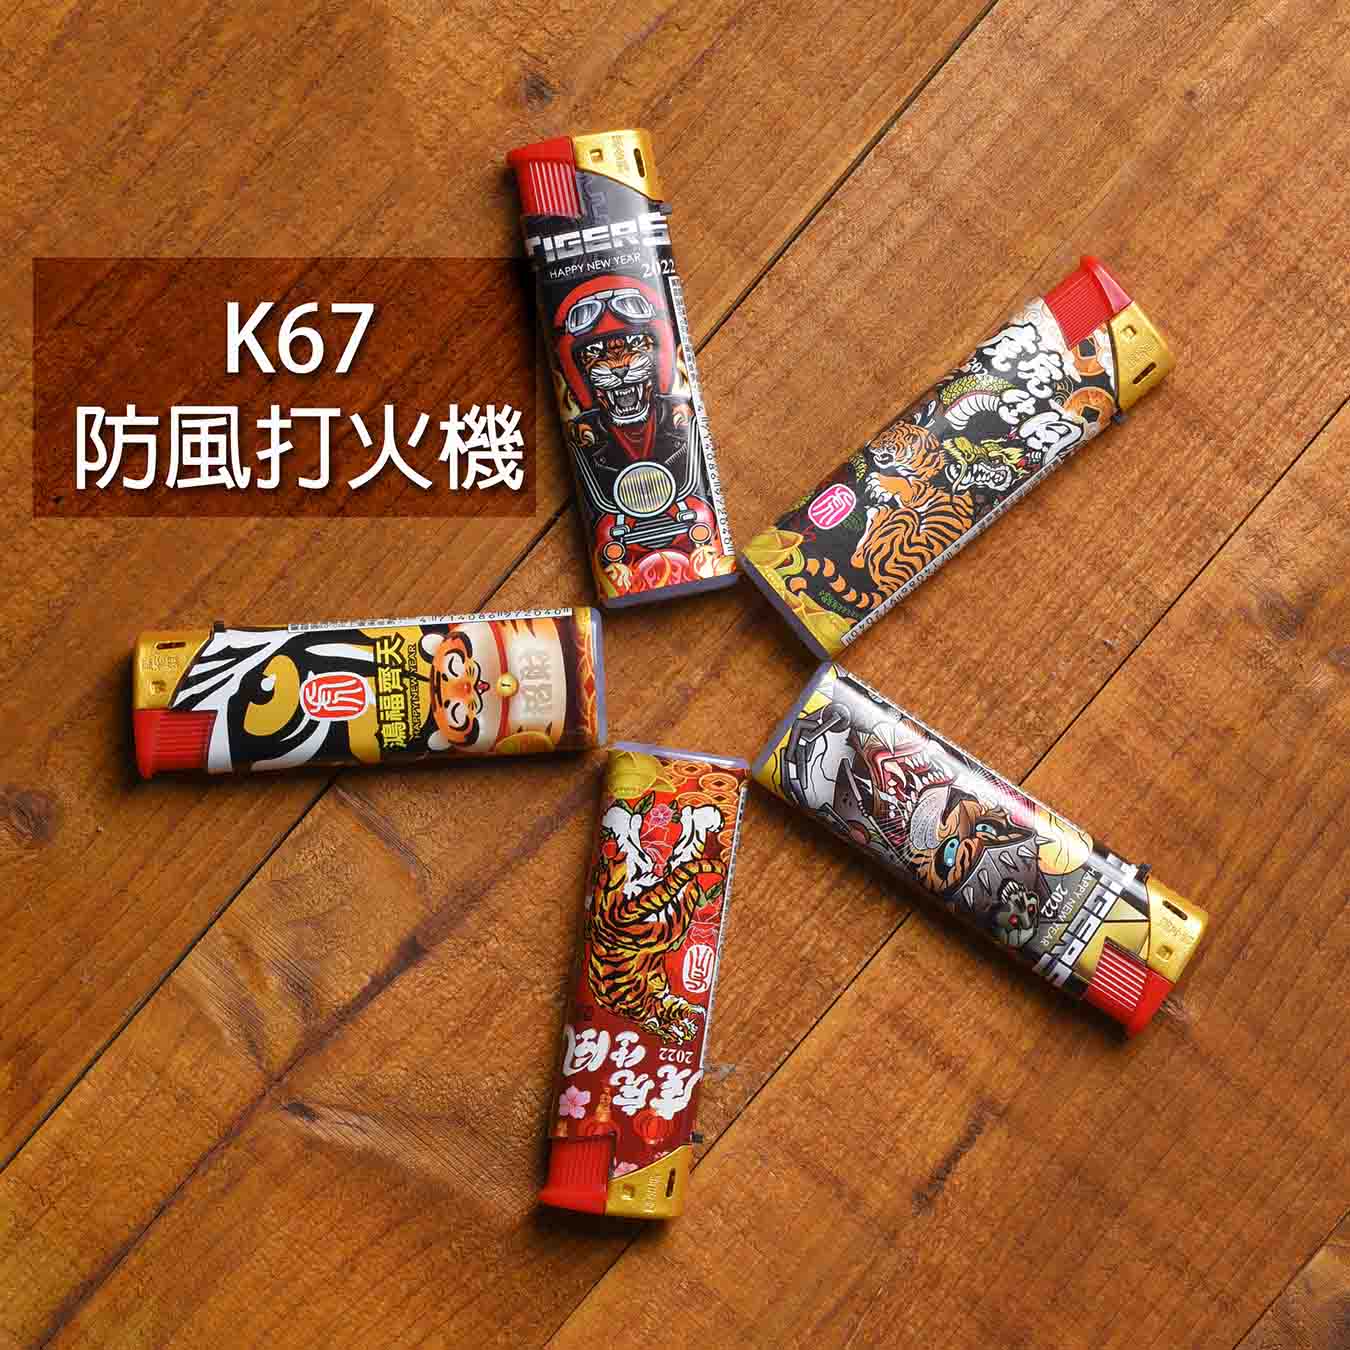 K67虎虎生風防風打火機(一盒25入)